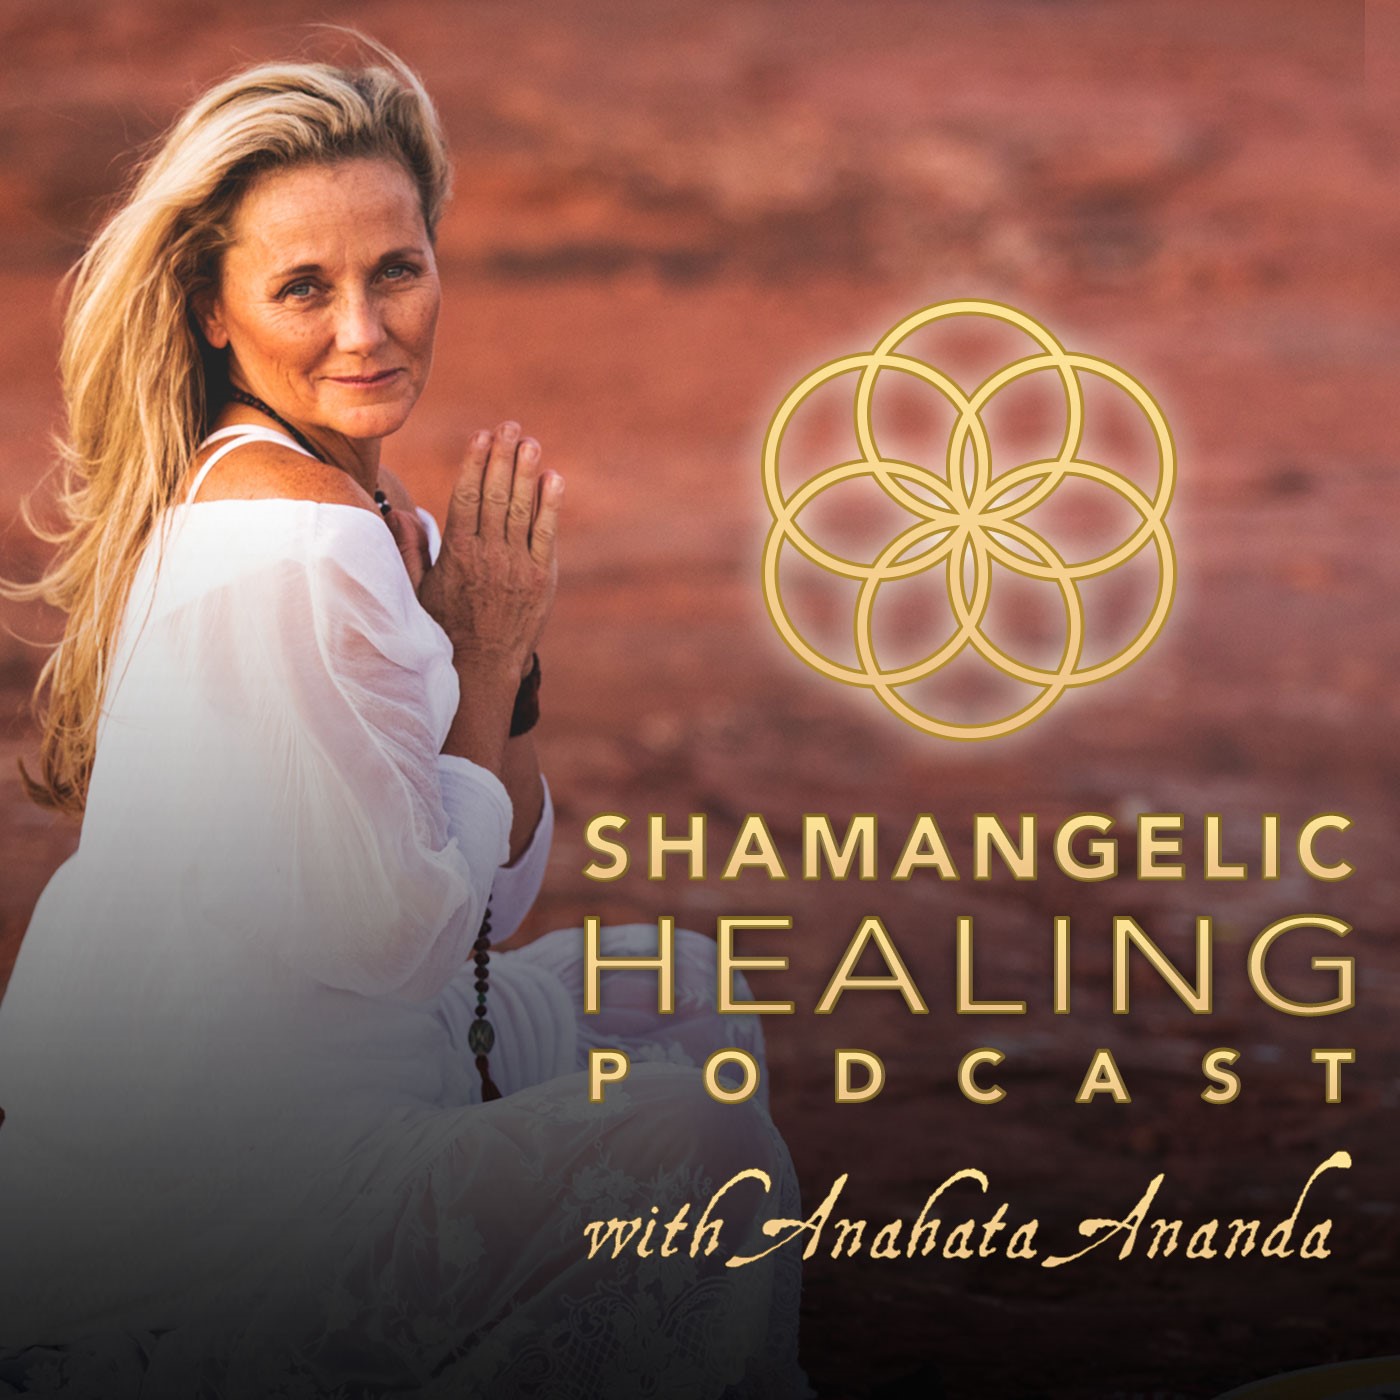 Shamangelic Healing Podcast